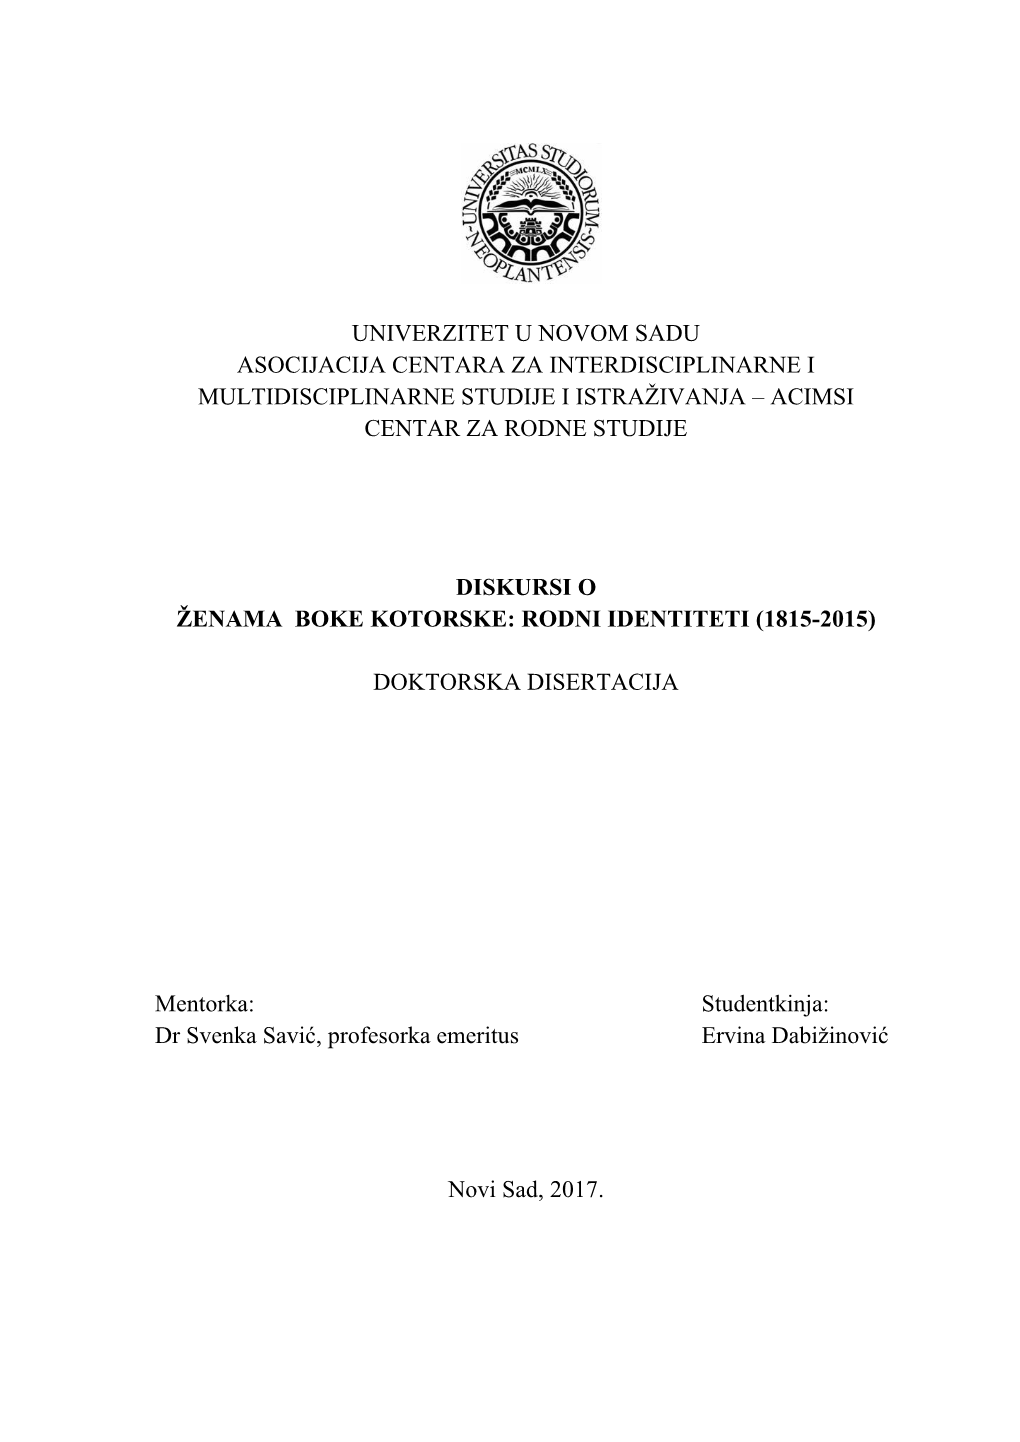 Diskursi O Ženama Boke Kotorske: Rodni Identiteti (1815-2015)